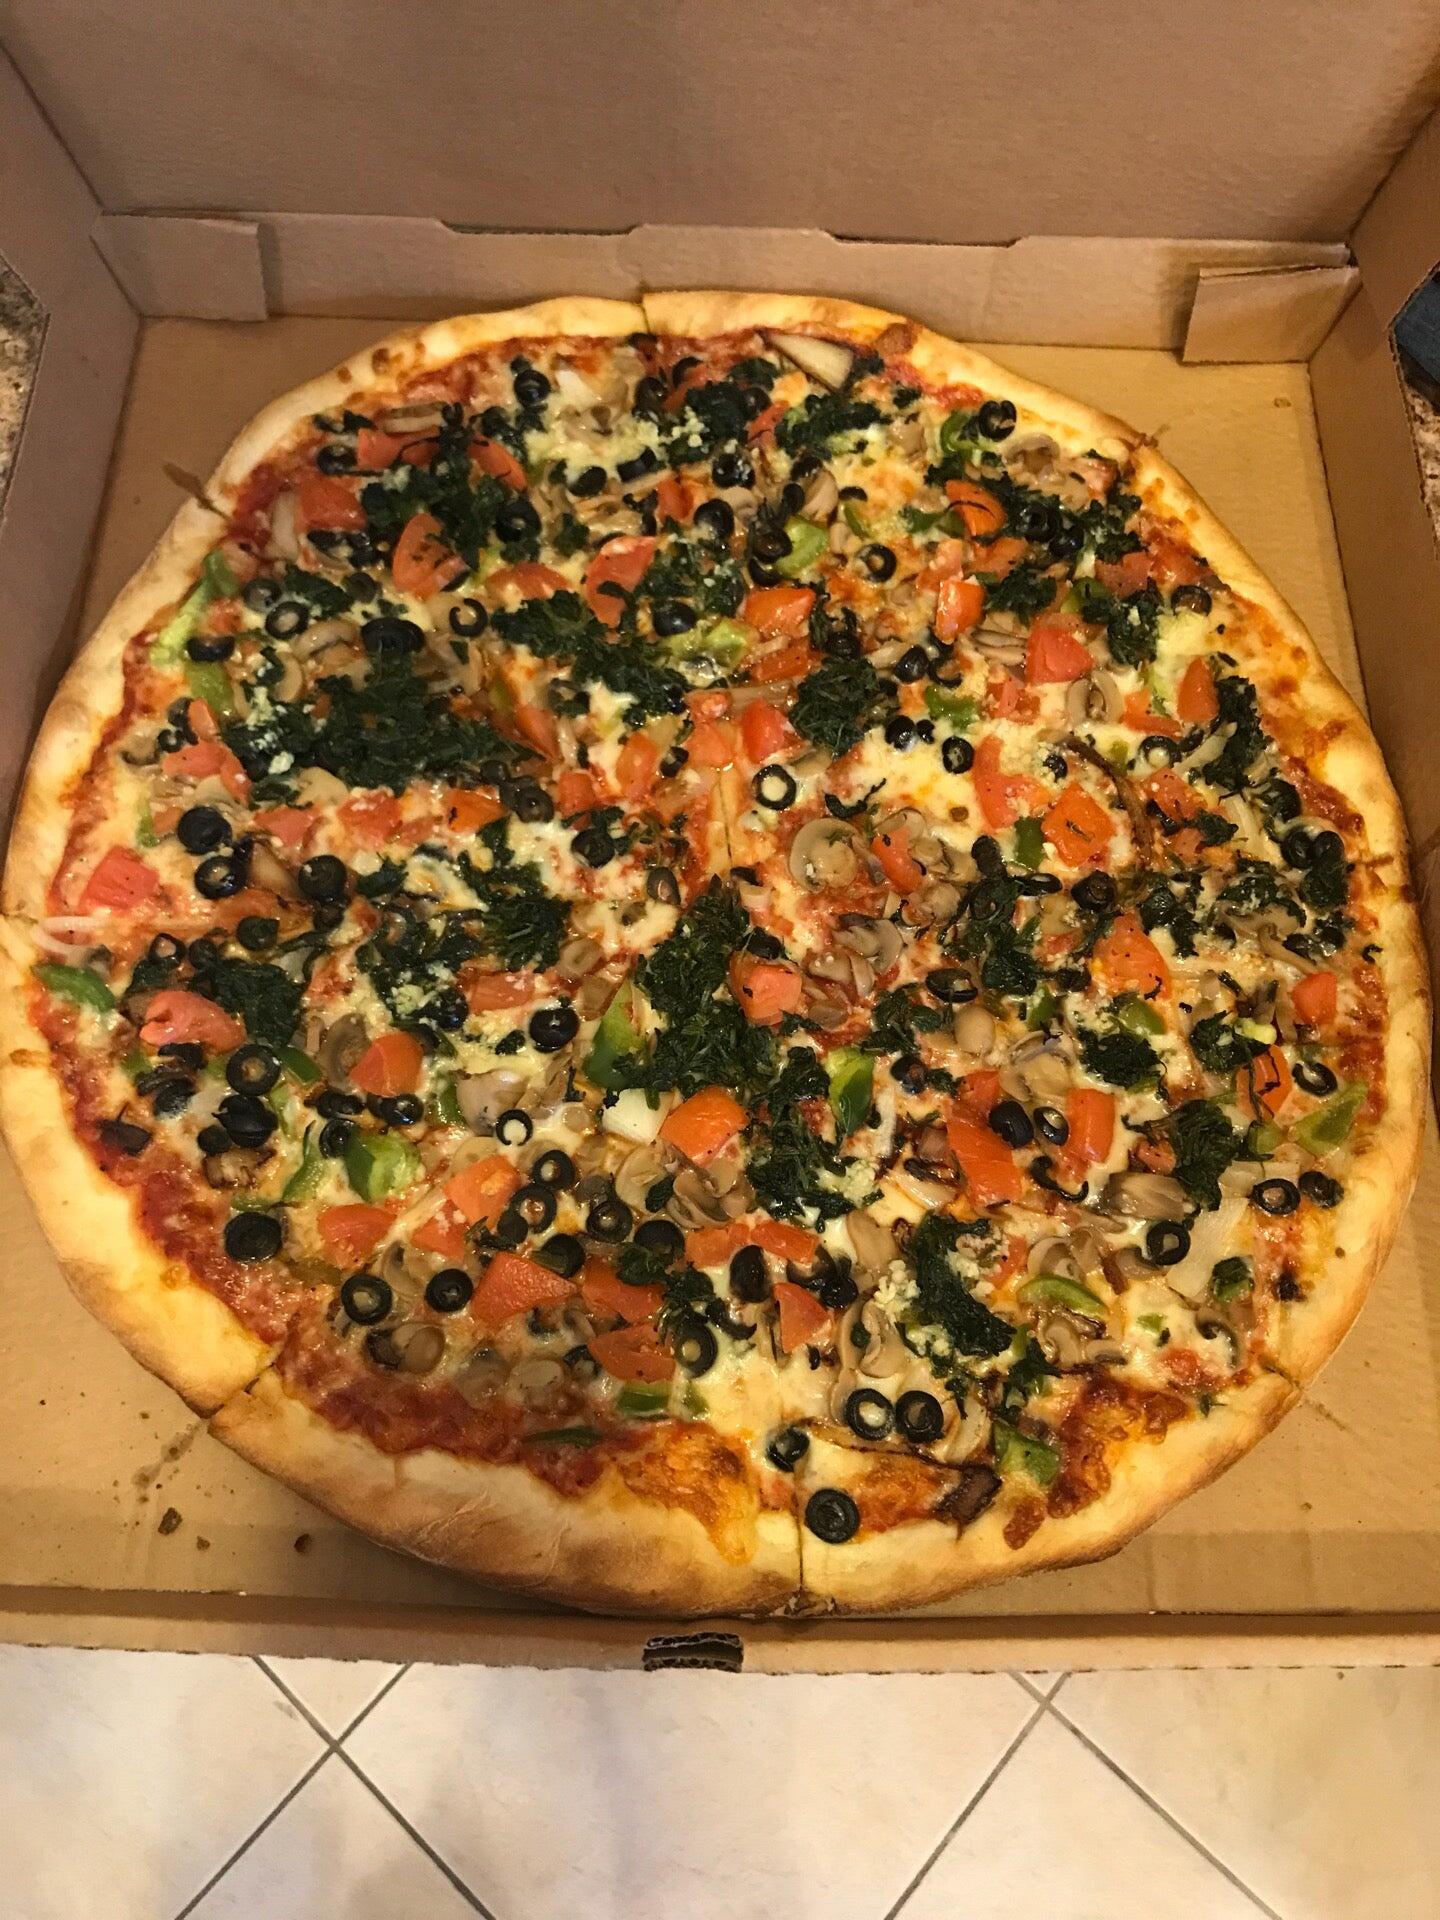 Lake Worth Pizza